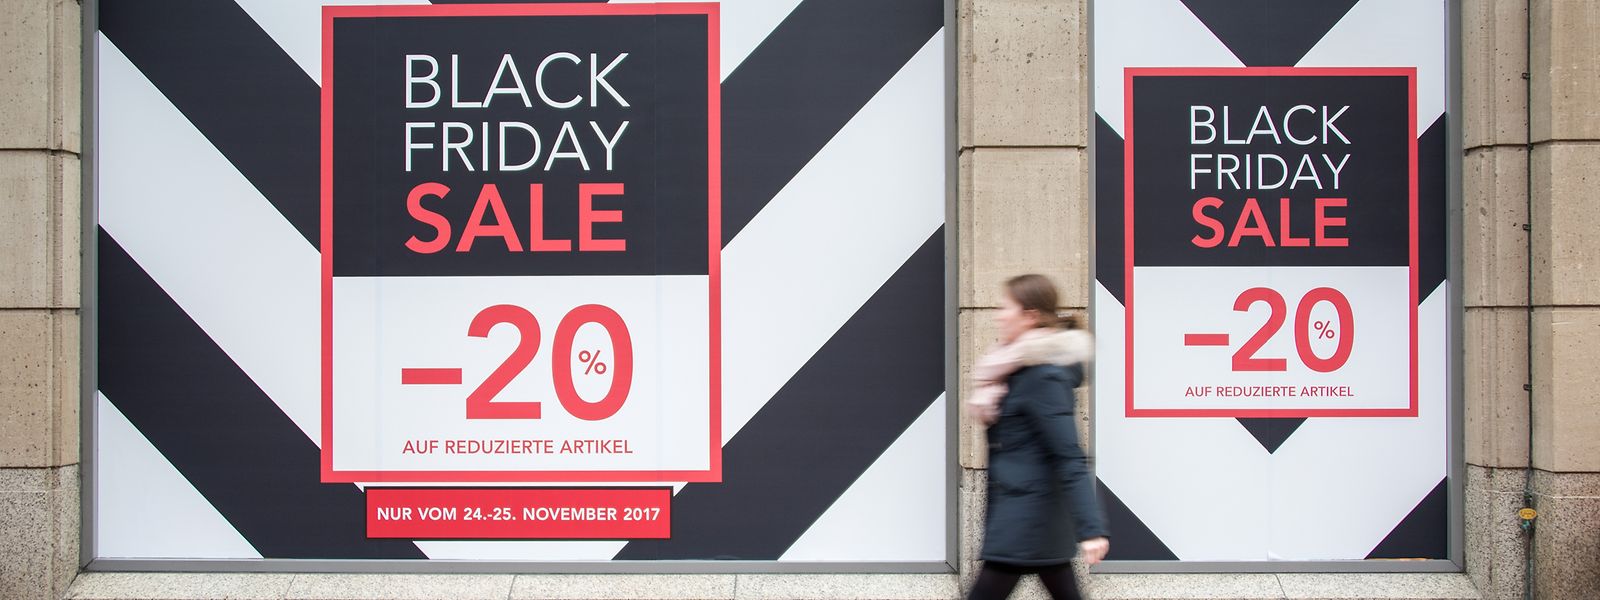 Am Black Friday bieten nicht nur Online-Händler ihren Kunden besonders niedrige Preise.